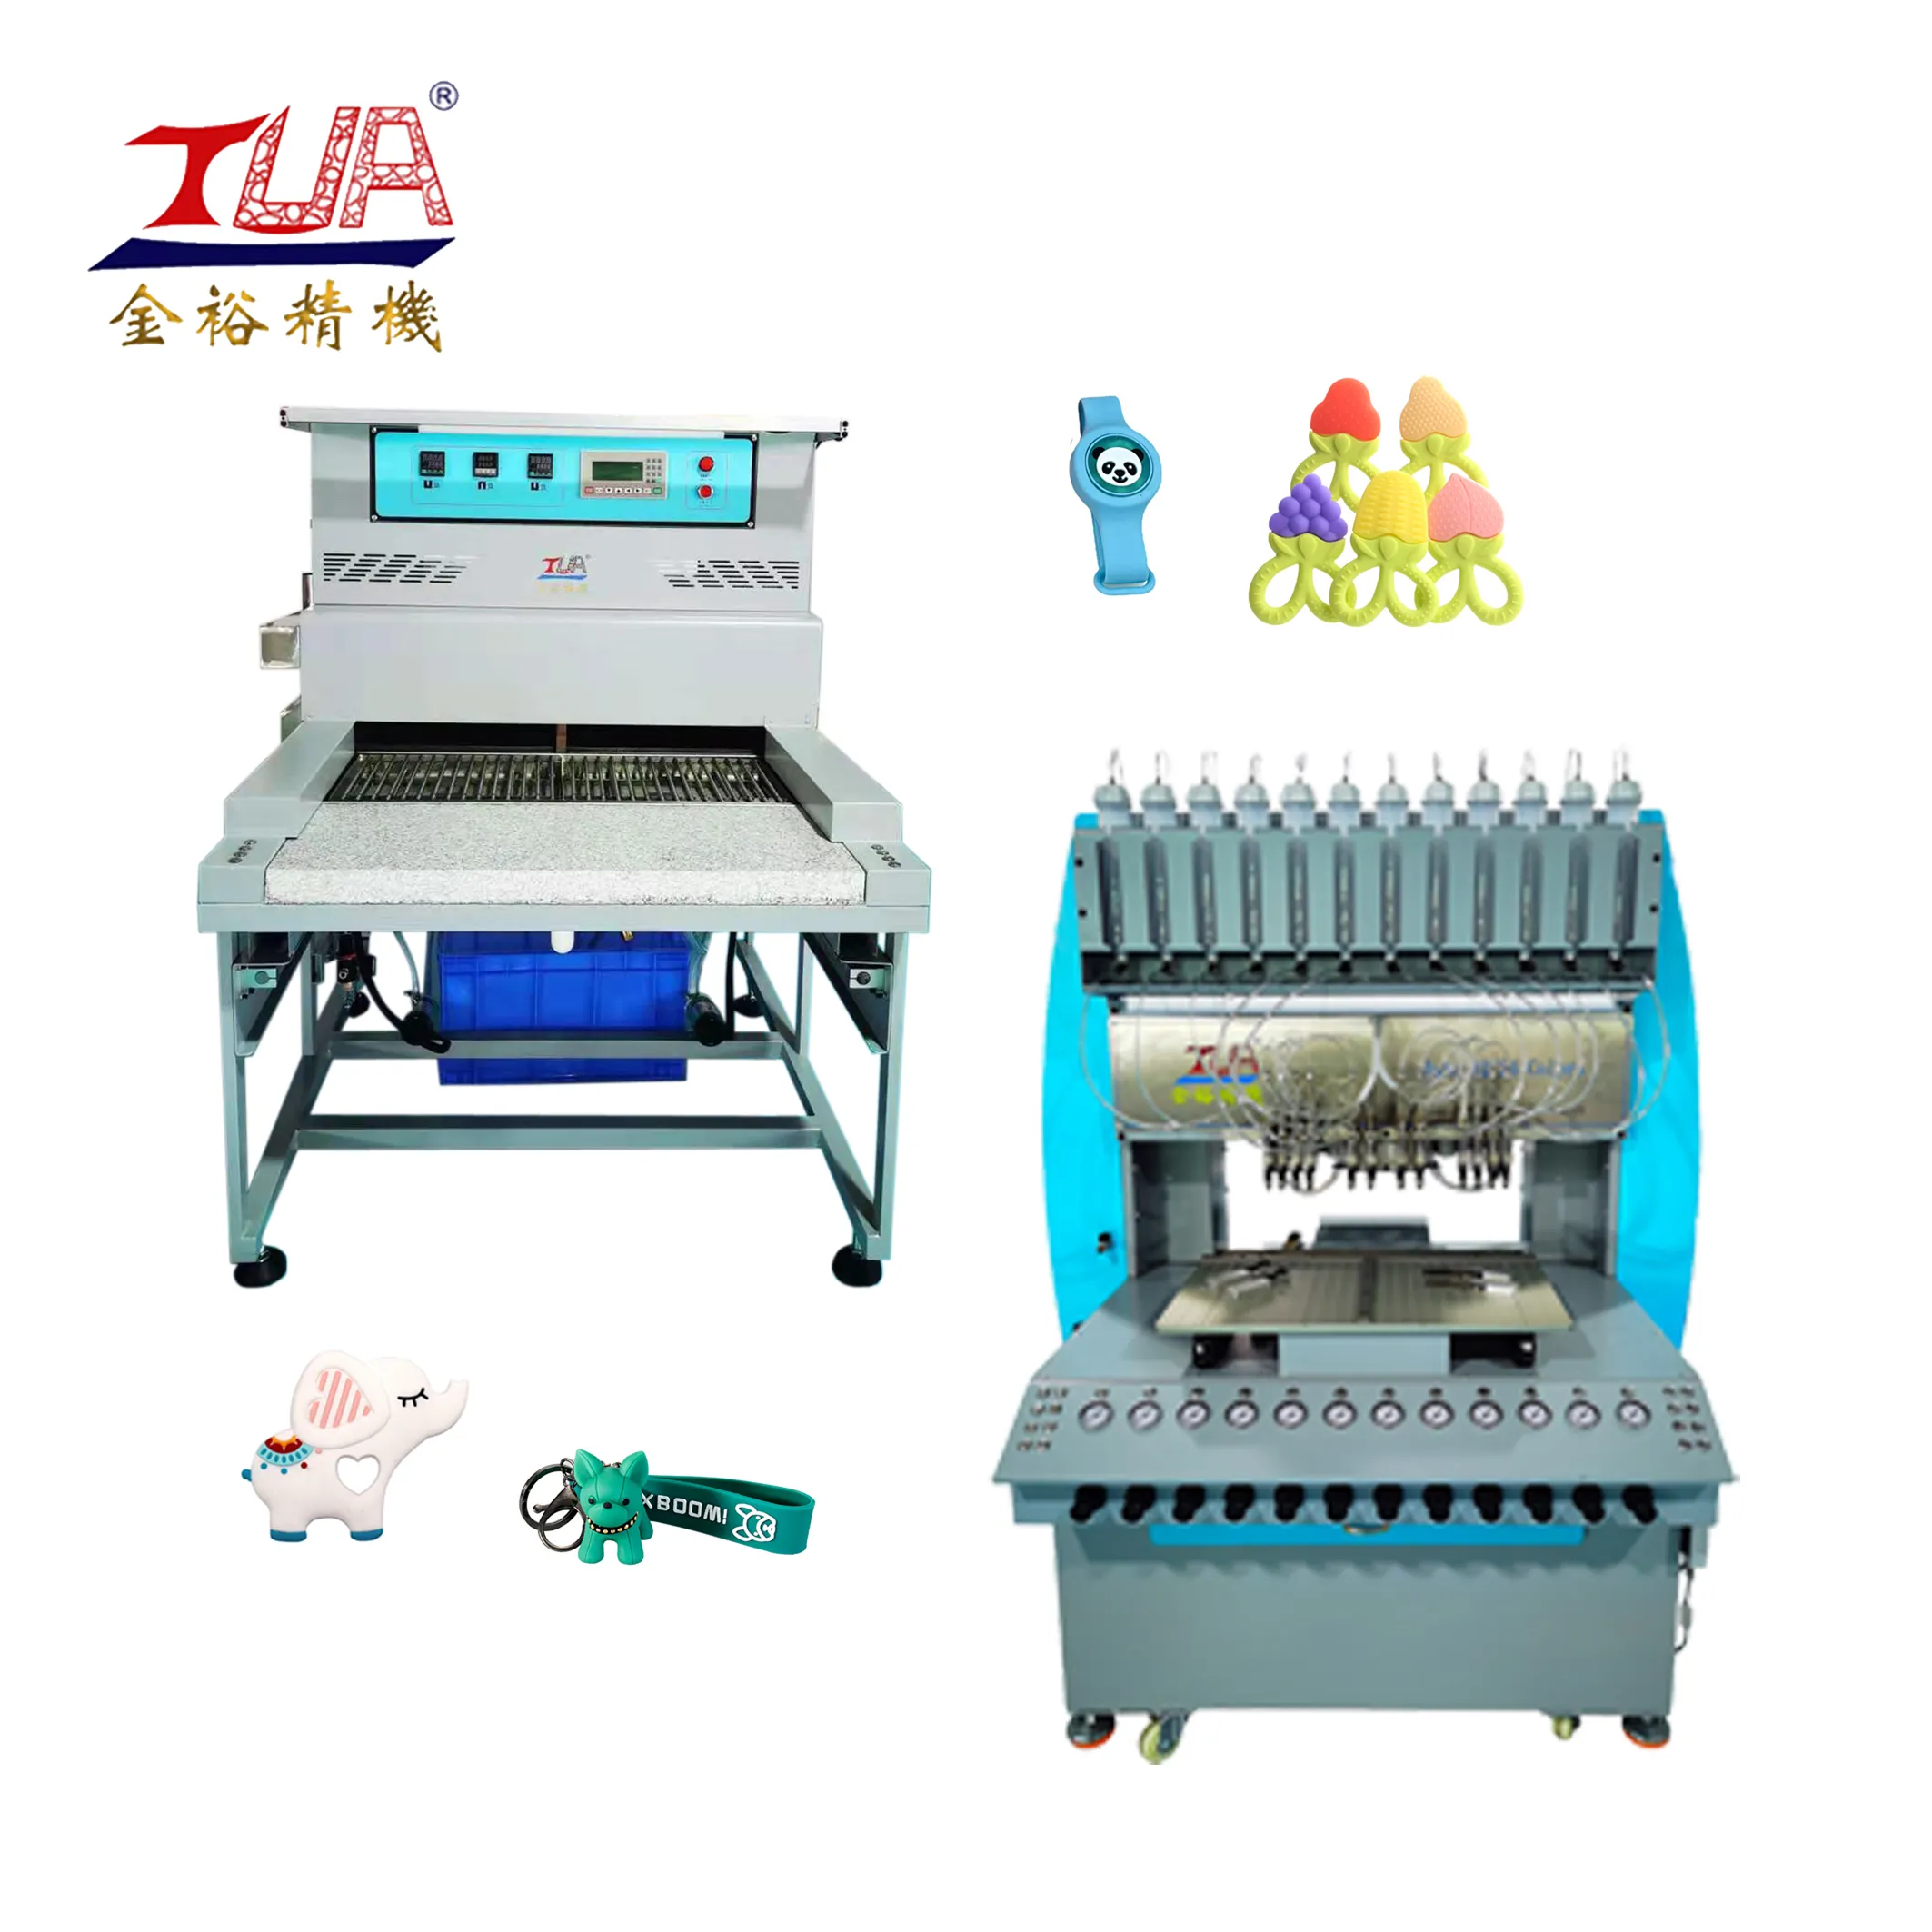 Jinyu inteligente duas estação cozimento forno PVC silicone patches chaveiro que faz a máquina operar automaticamente